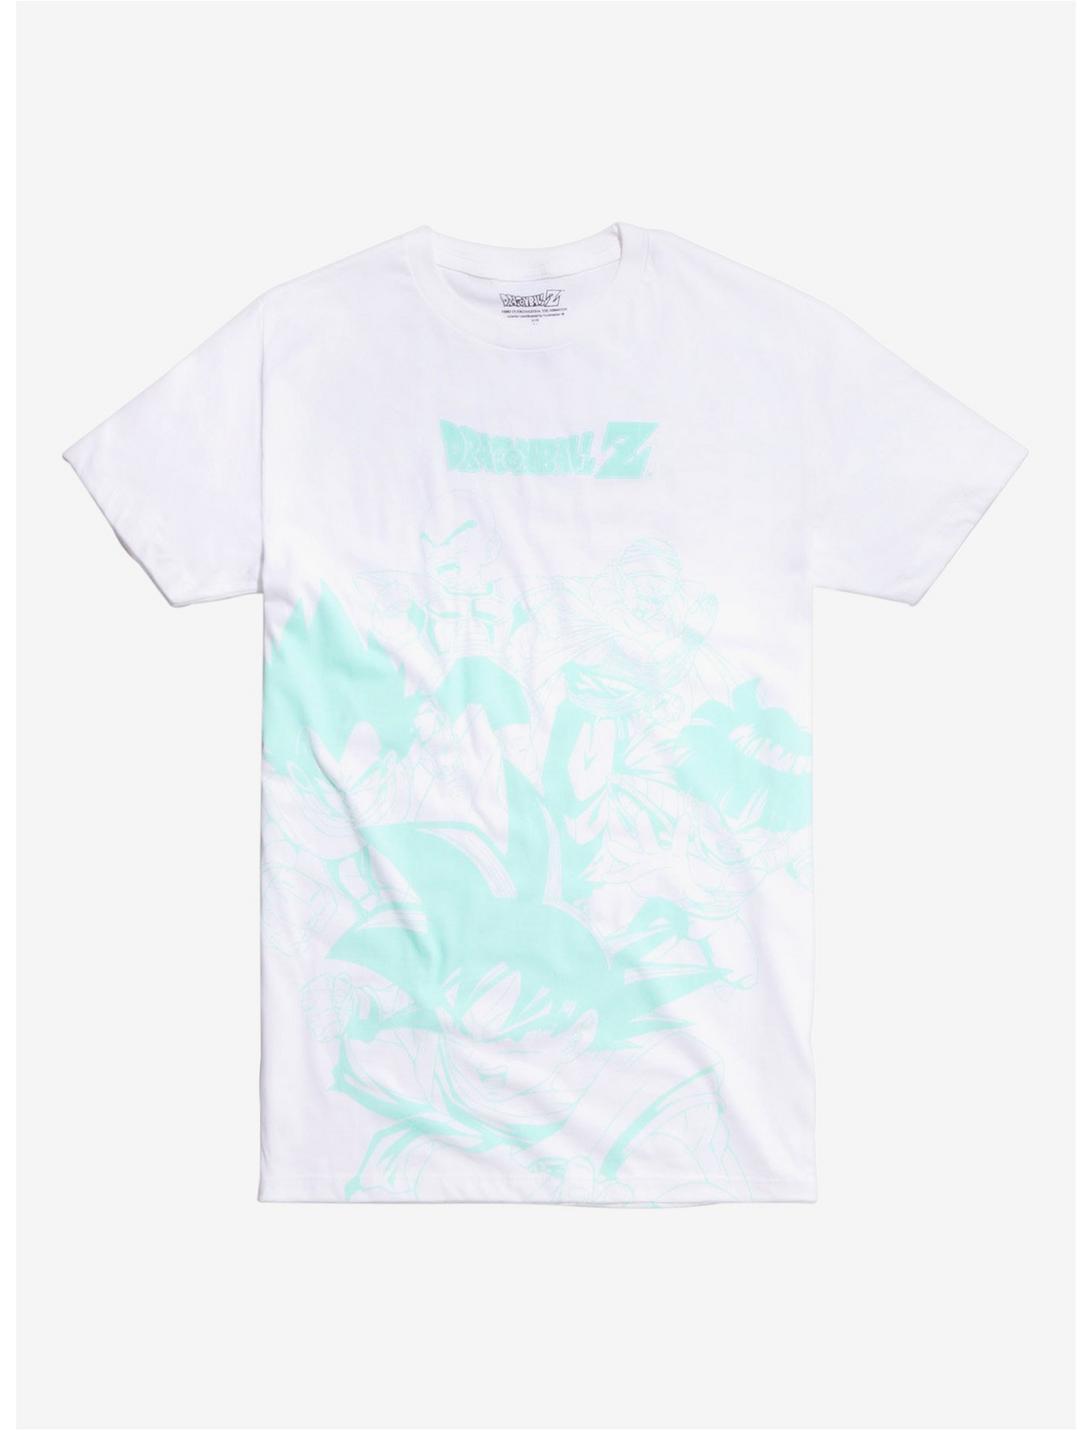 Dragon Ball Z Mint Print T-Shirt | Hot Topic